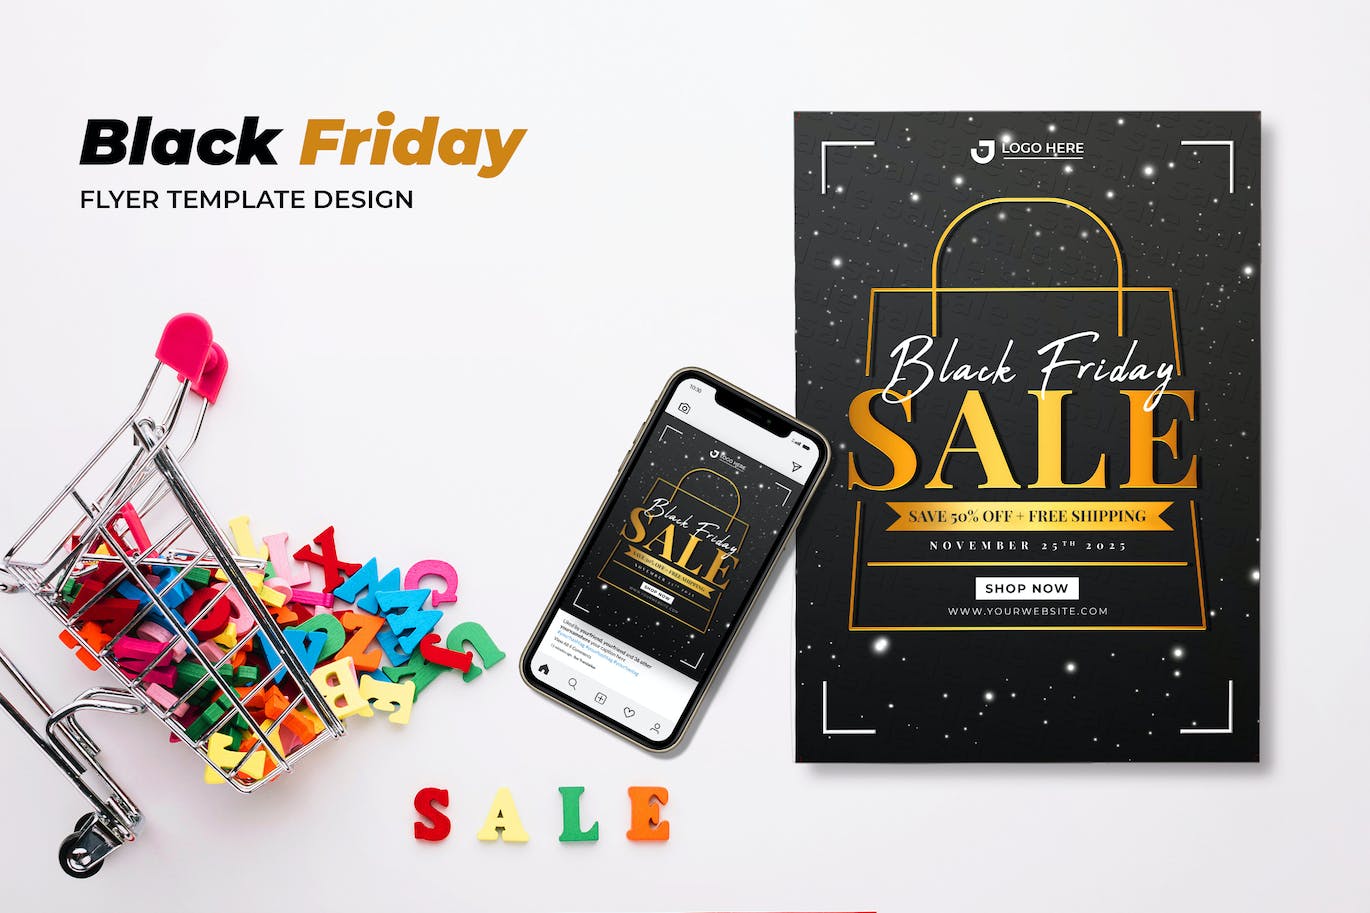 黑色星期五促销宣传单设计模板 Black Friday Sale Flyer 设计素材 第1张